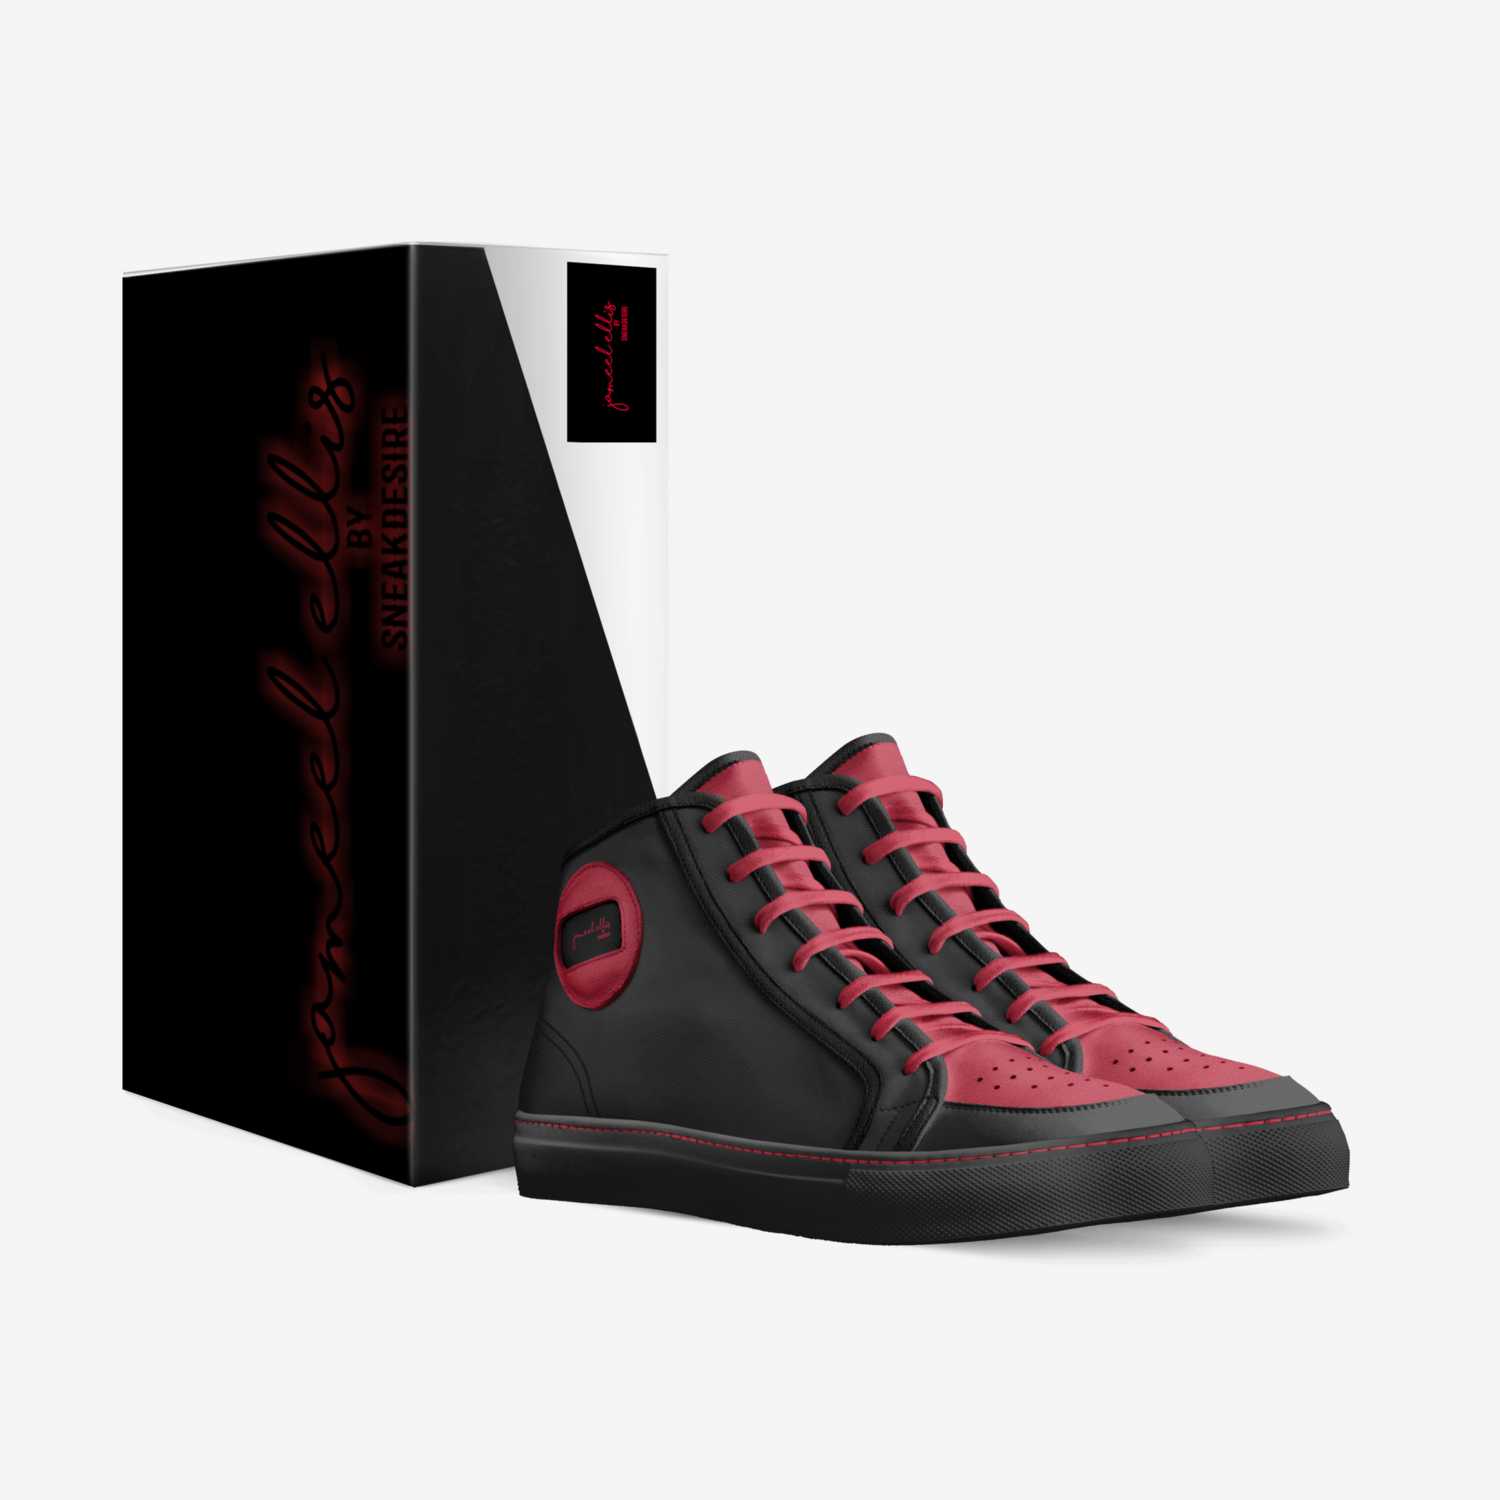 Jameel Ellis custom made in Italy shoes by Owen Ellis | Box view